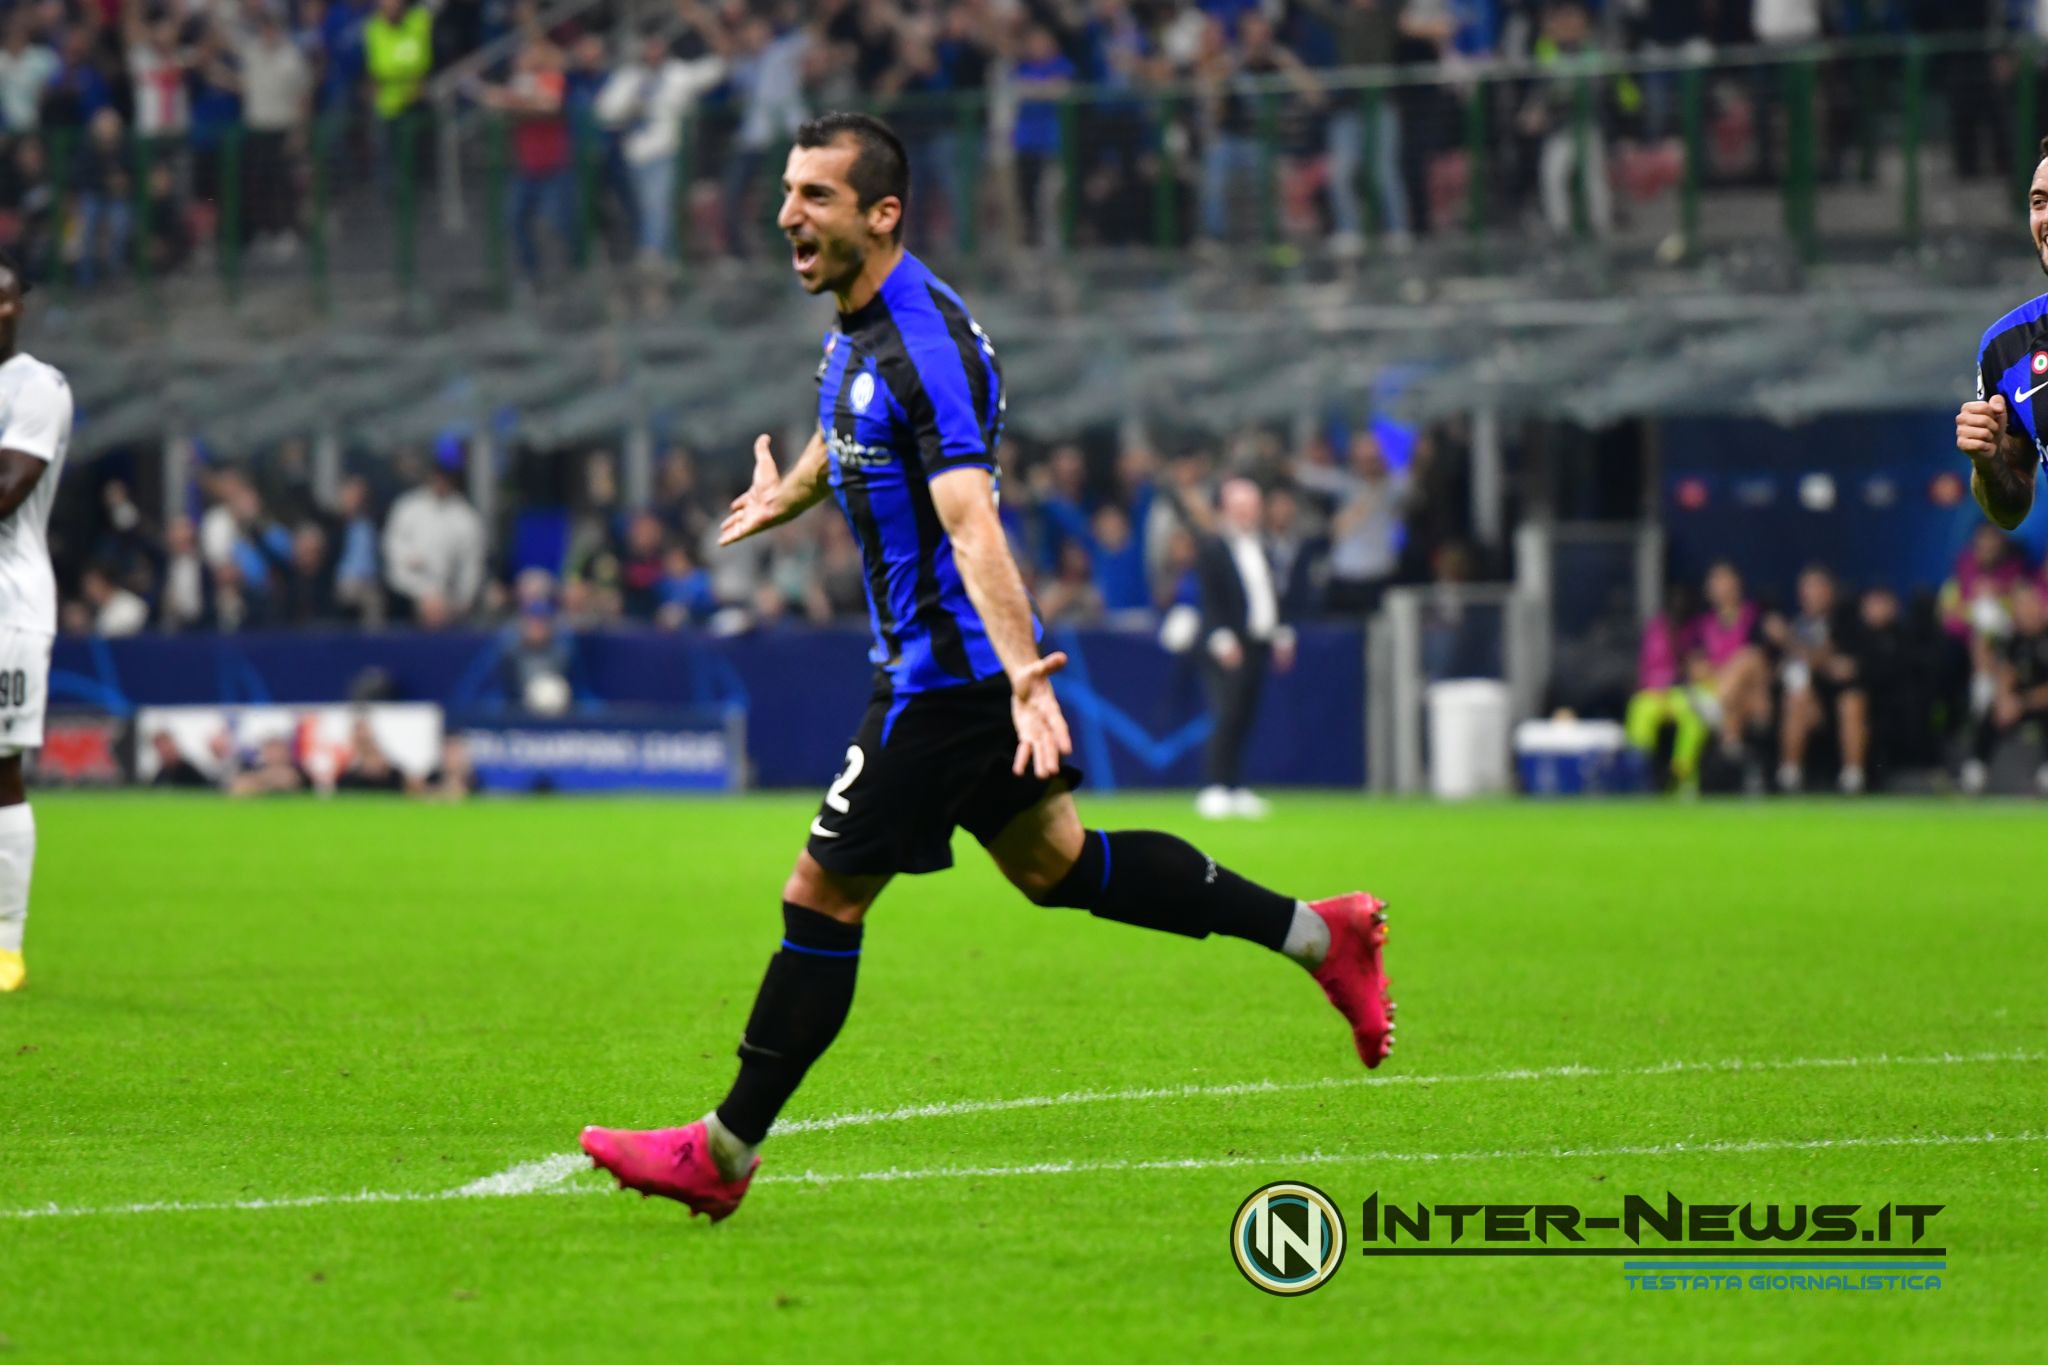 FOTO – Mkhitaryan, Inter celebra il centrocampista: «Magico!»